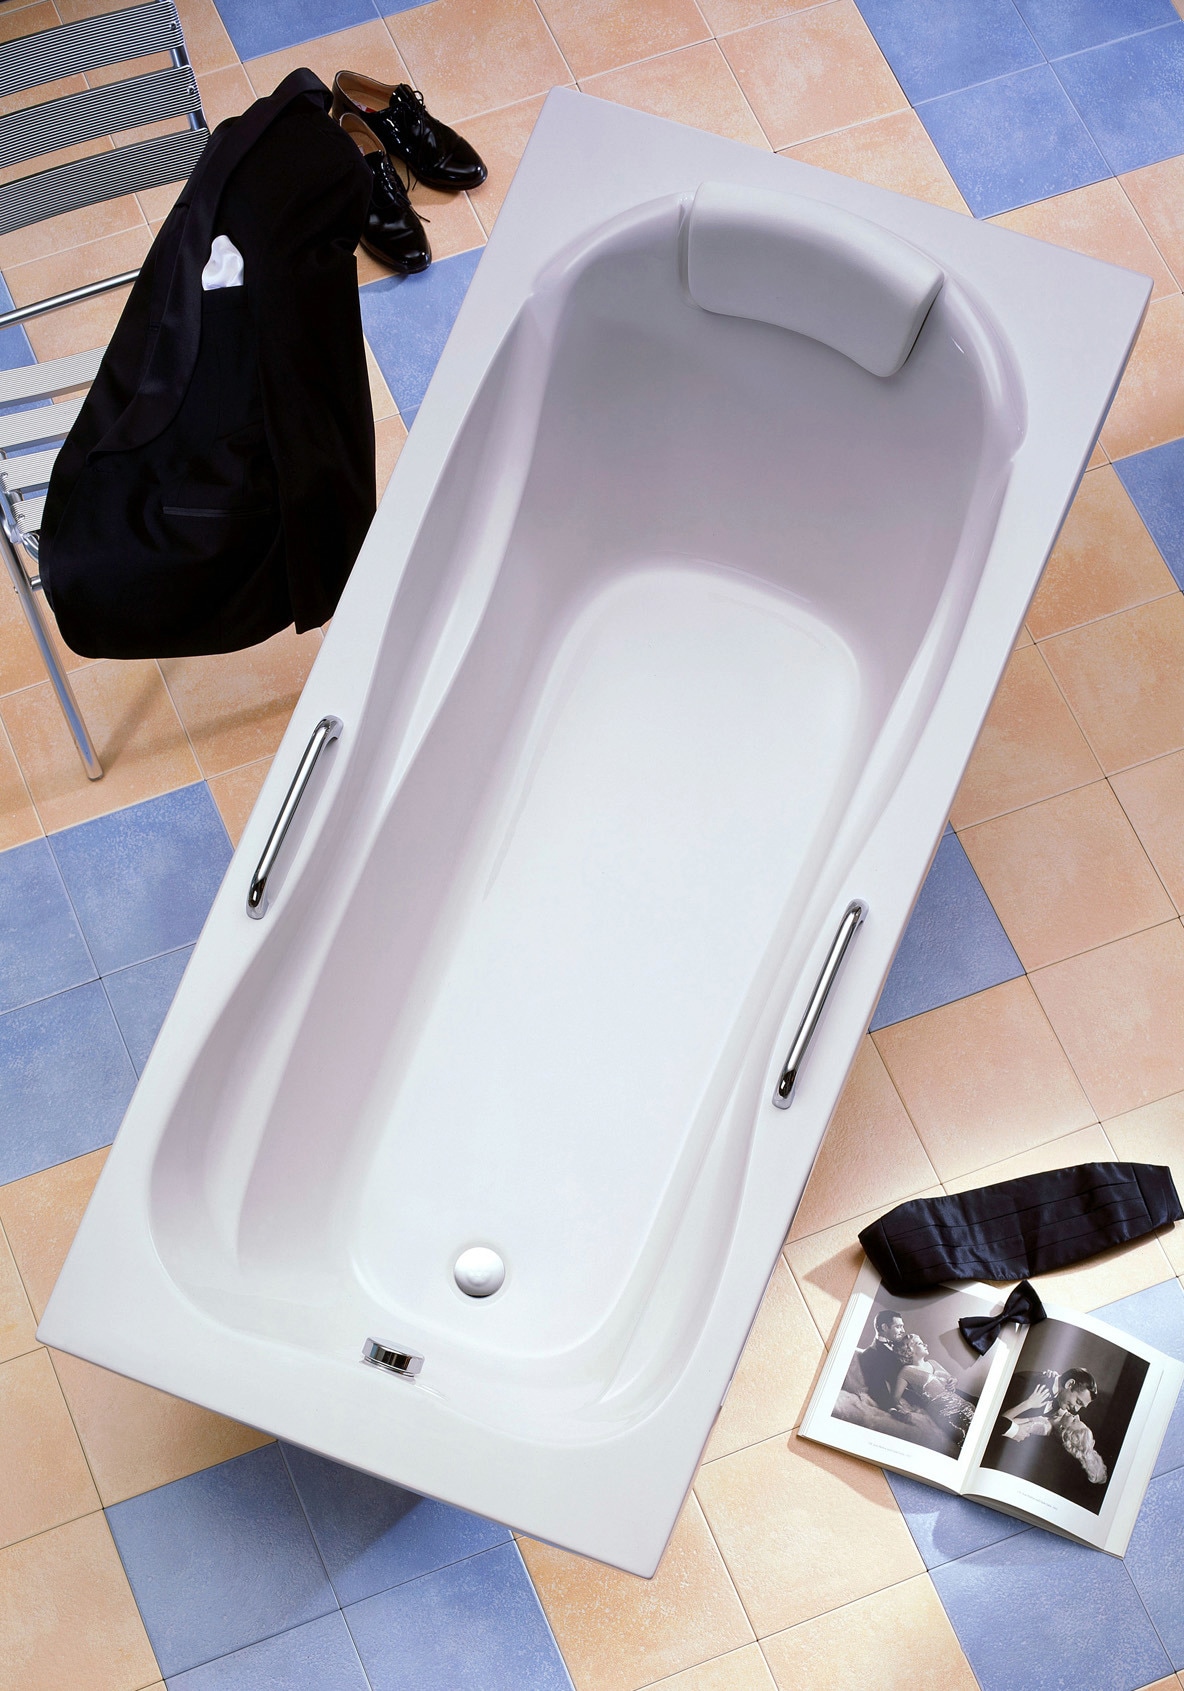 OTTOFOND Badewanne »Jamaica«, (5 tlg.), mit Fußgestell, Ablaufgarnitur, Nackenkissen und Griffe